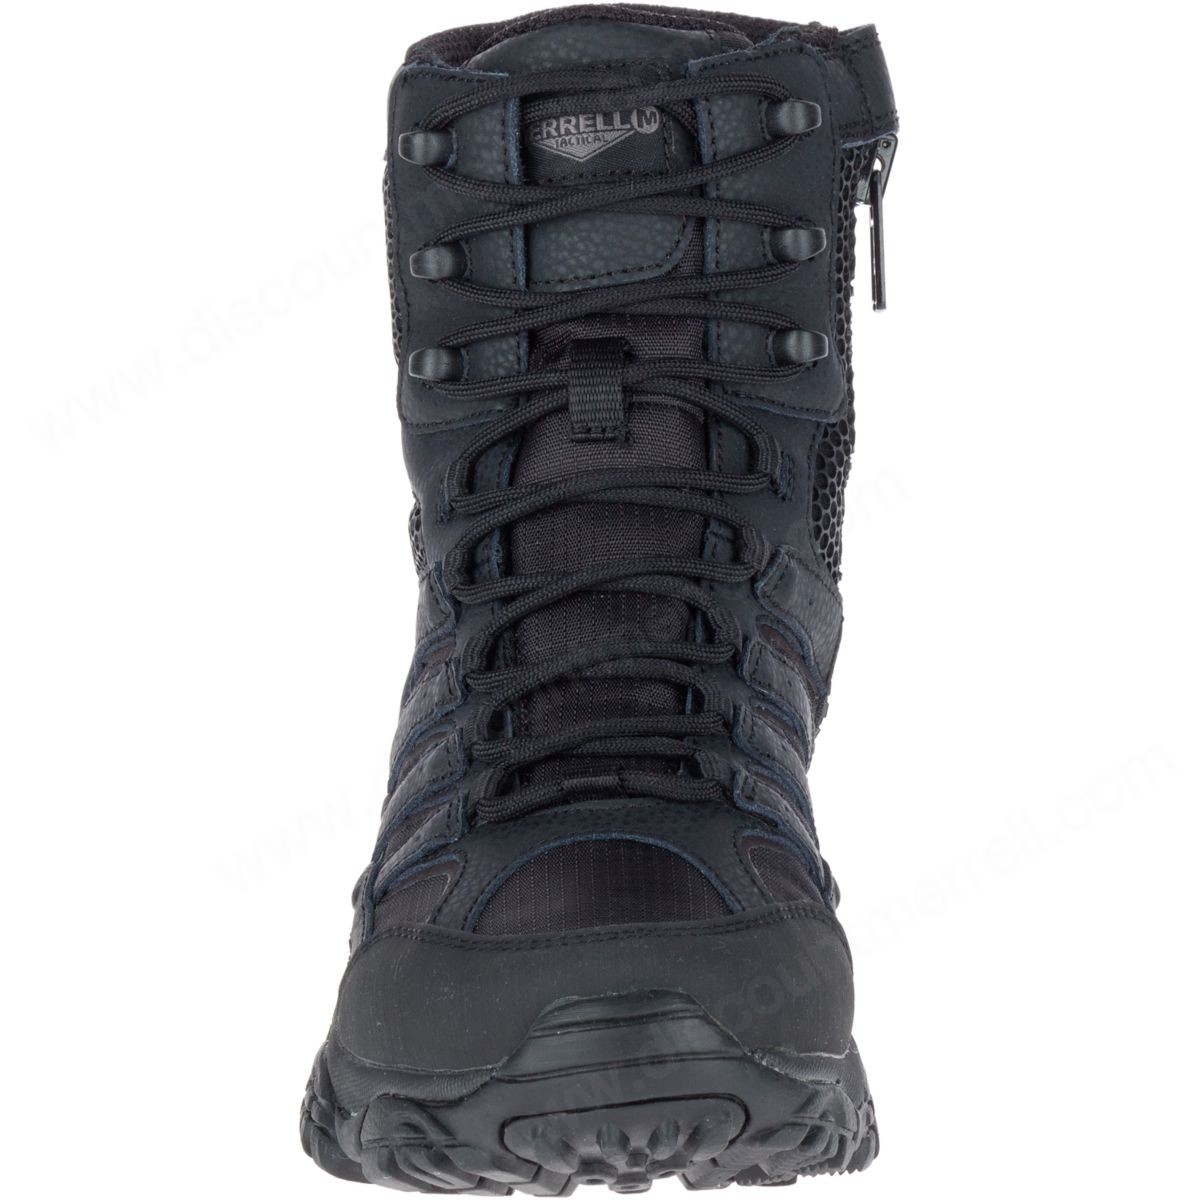 Merrell Men's Moab " Tactical Waterproof Boot Black - -4